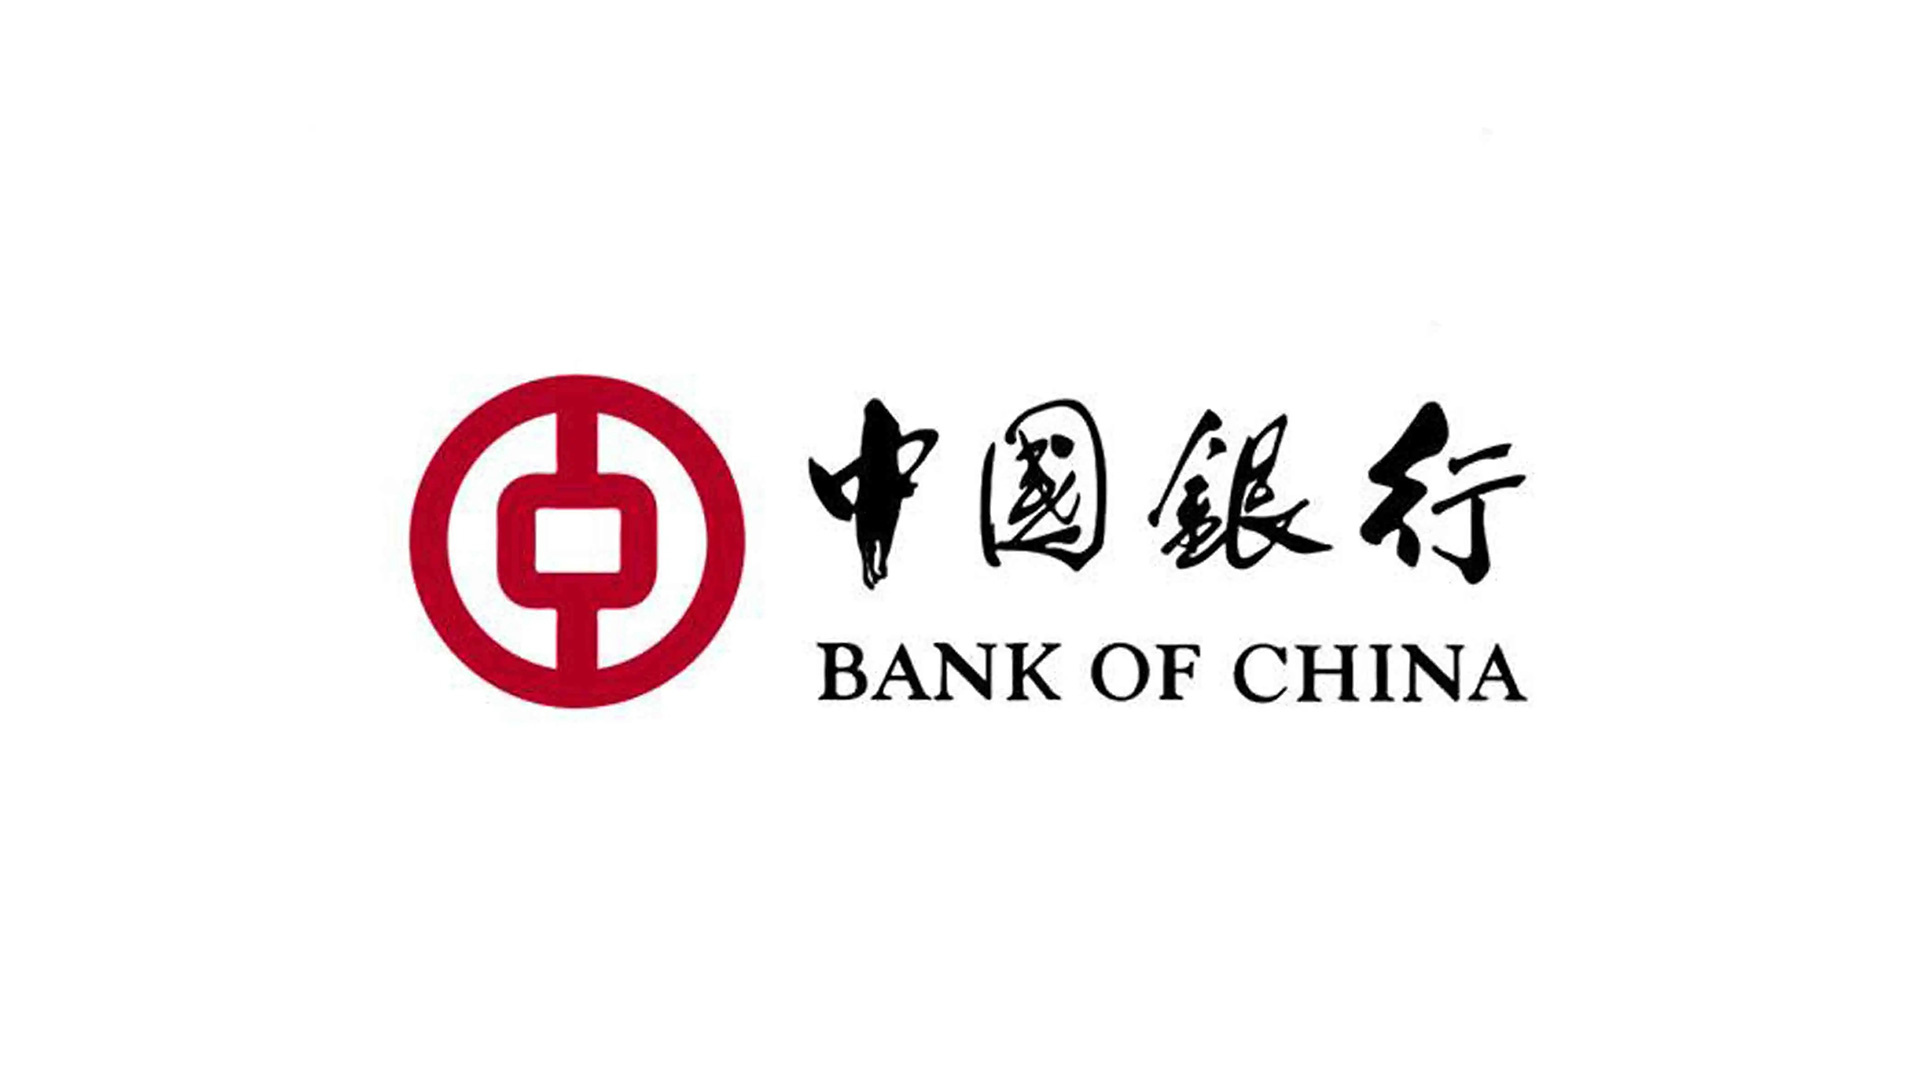 中国银行标志设计的含义寓义正白稿.jpg